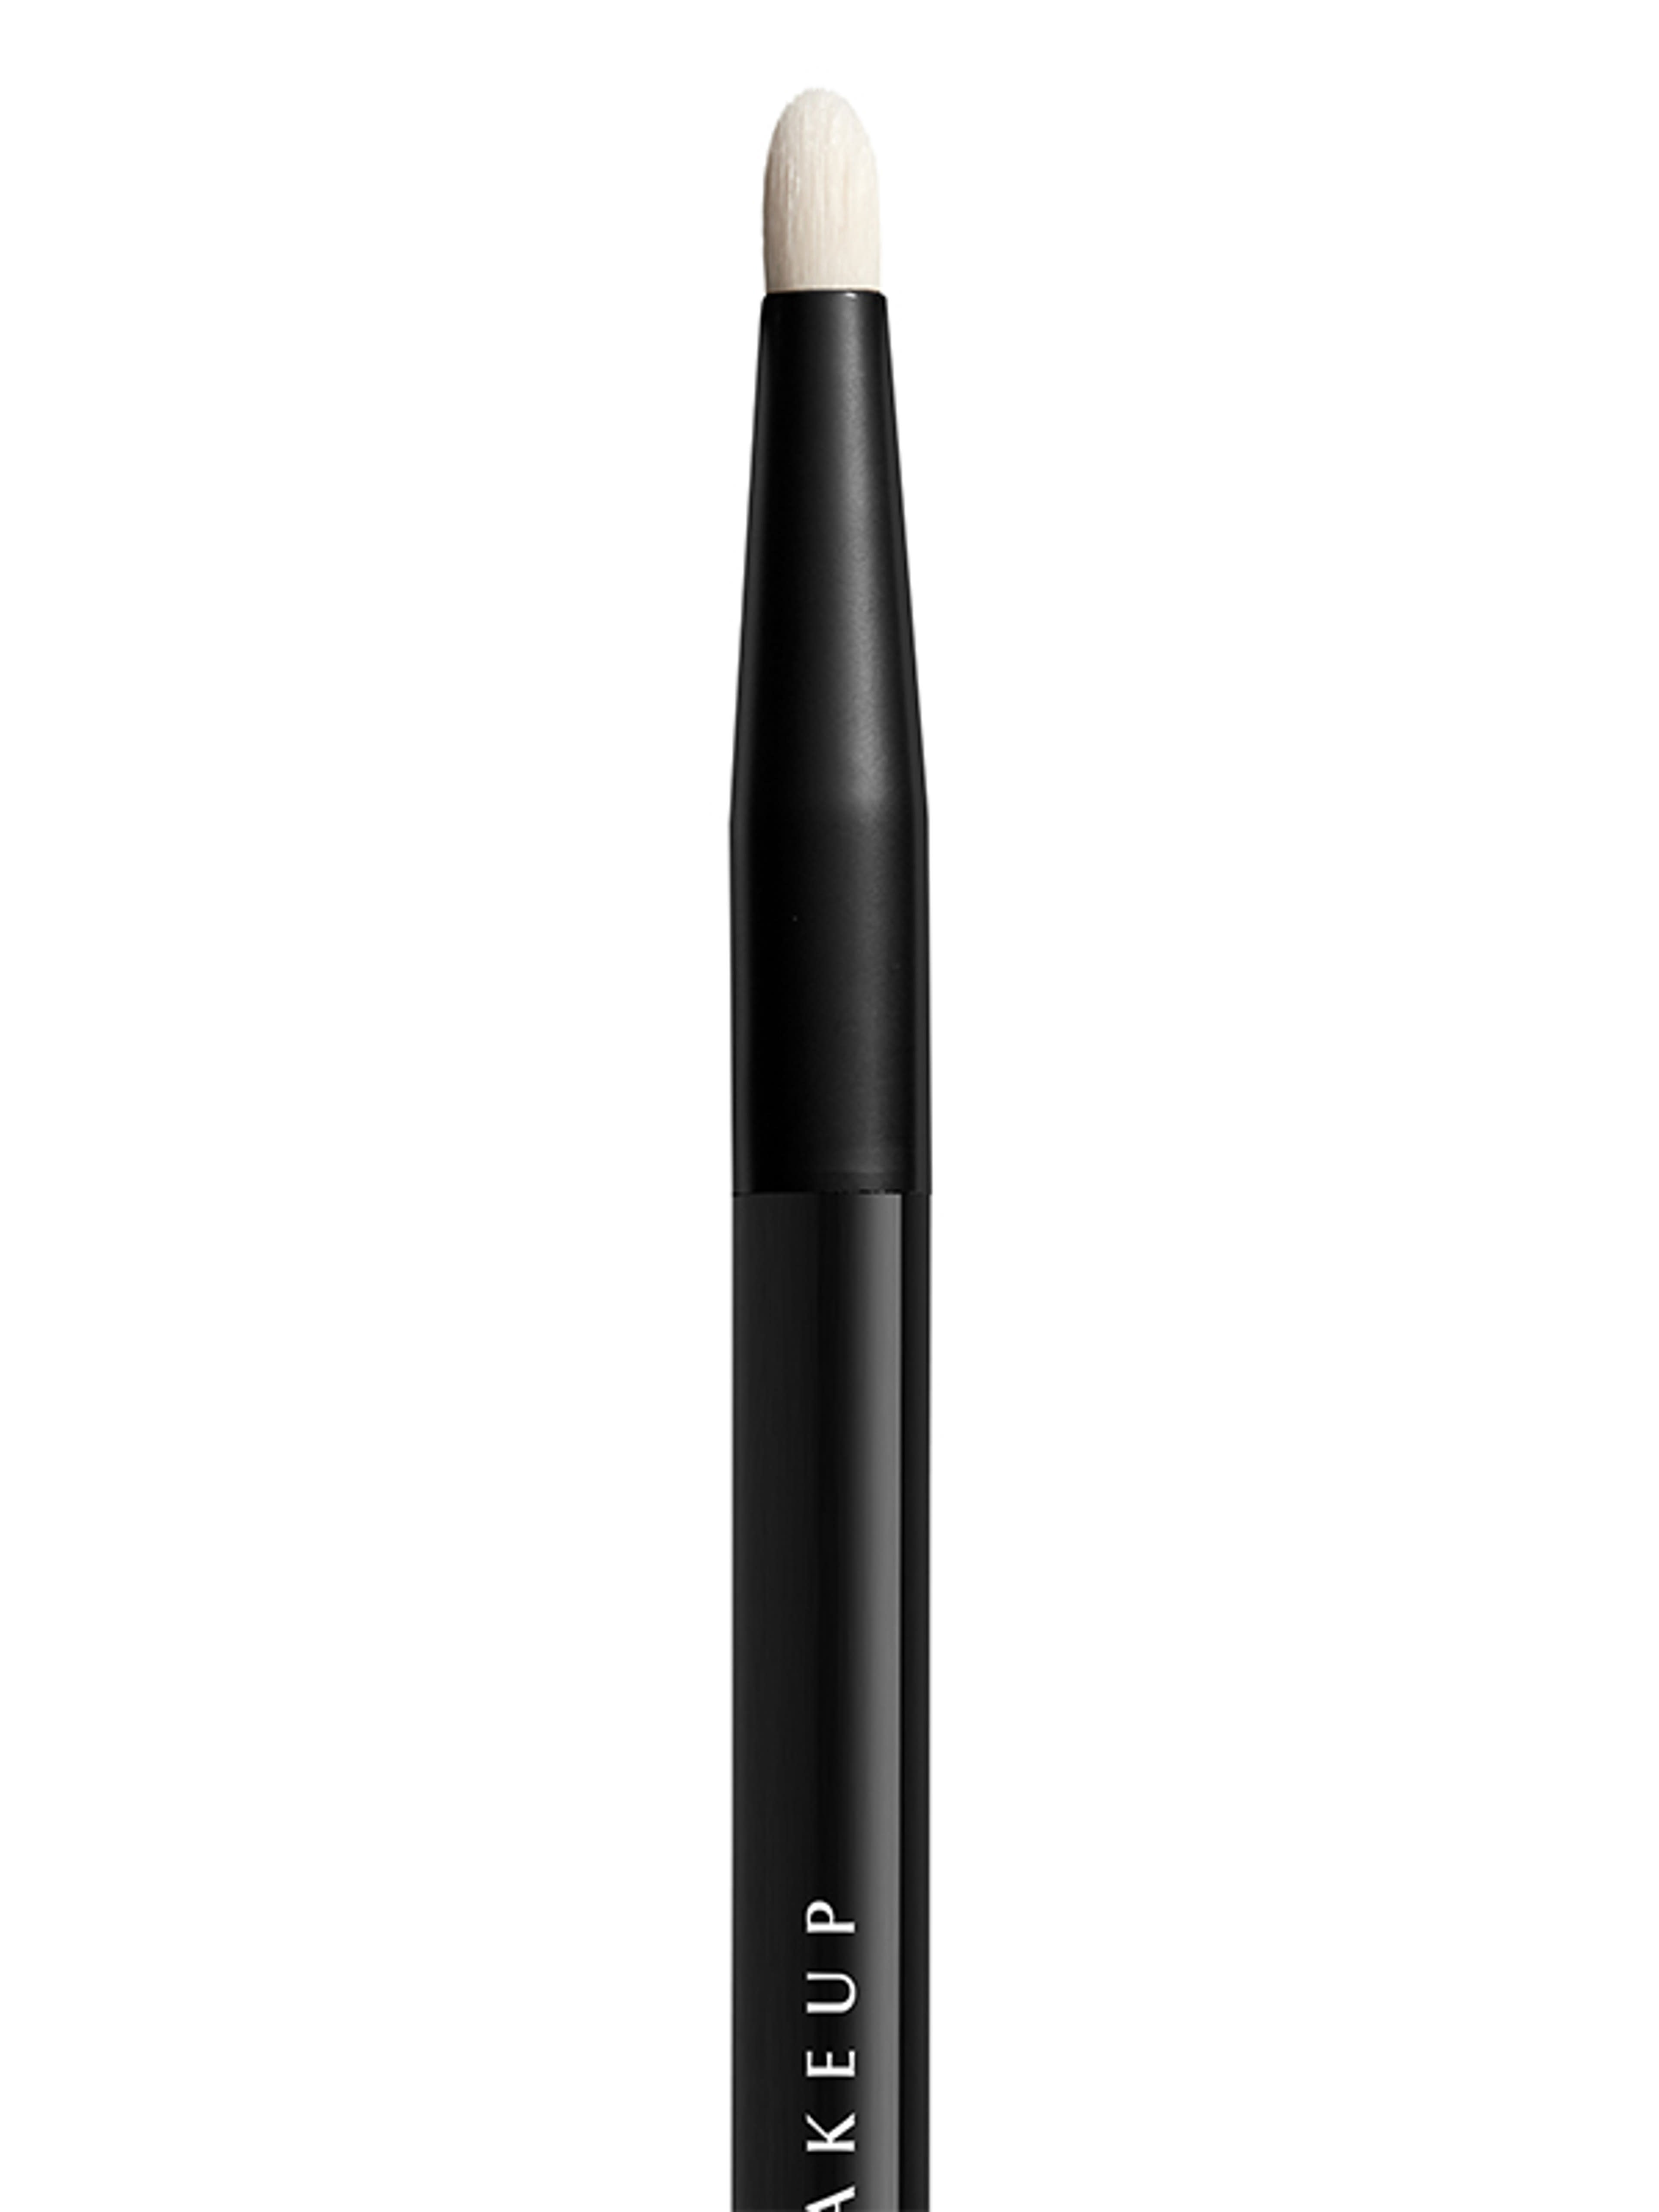 NYX Professional Makeup Pro Brush szemhéj ecset /Detail - 1 db-2